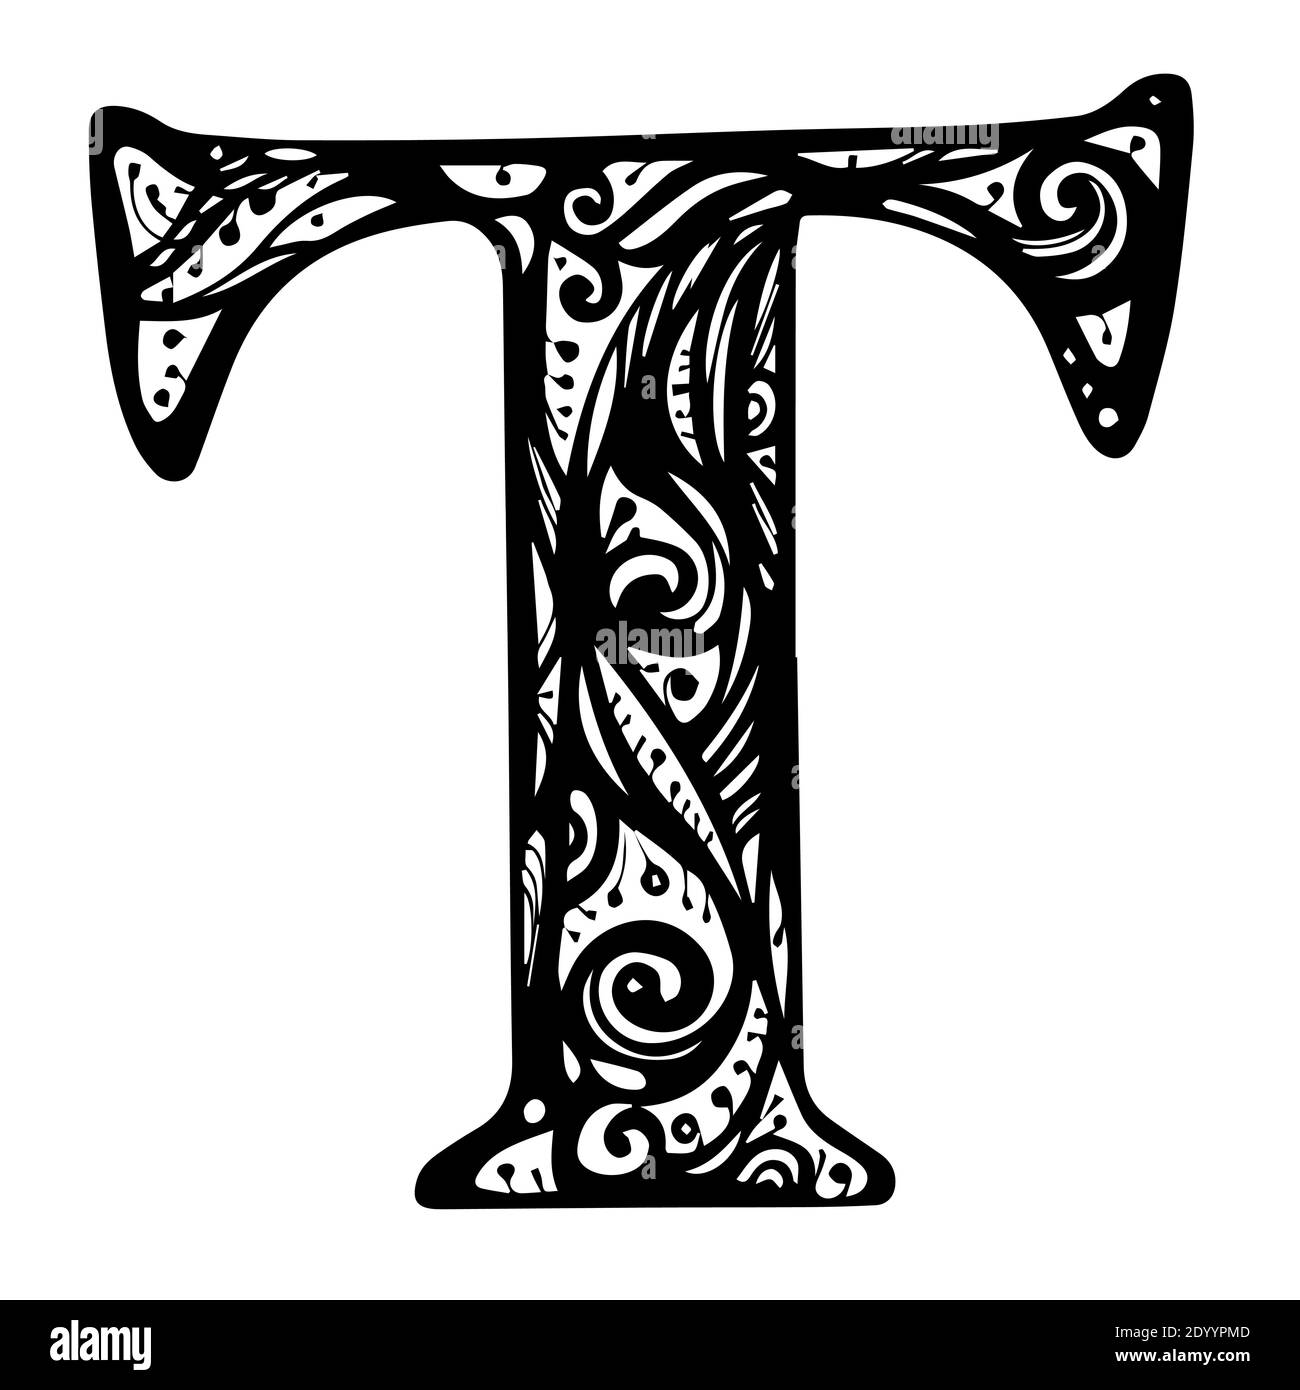 Floral Initial Großbuchstabe T. Design Vektor mit schwarzer Farbe. tattoo Vorlage oder Kalligraphie Typografie Monogramm Stock Vektor